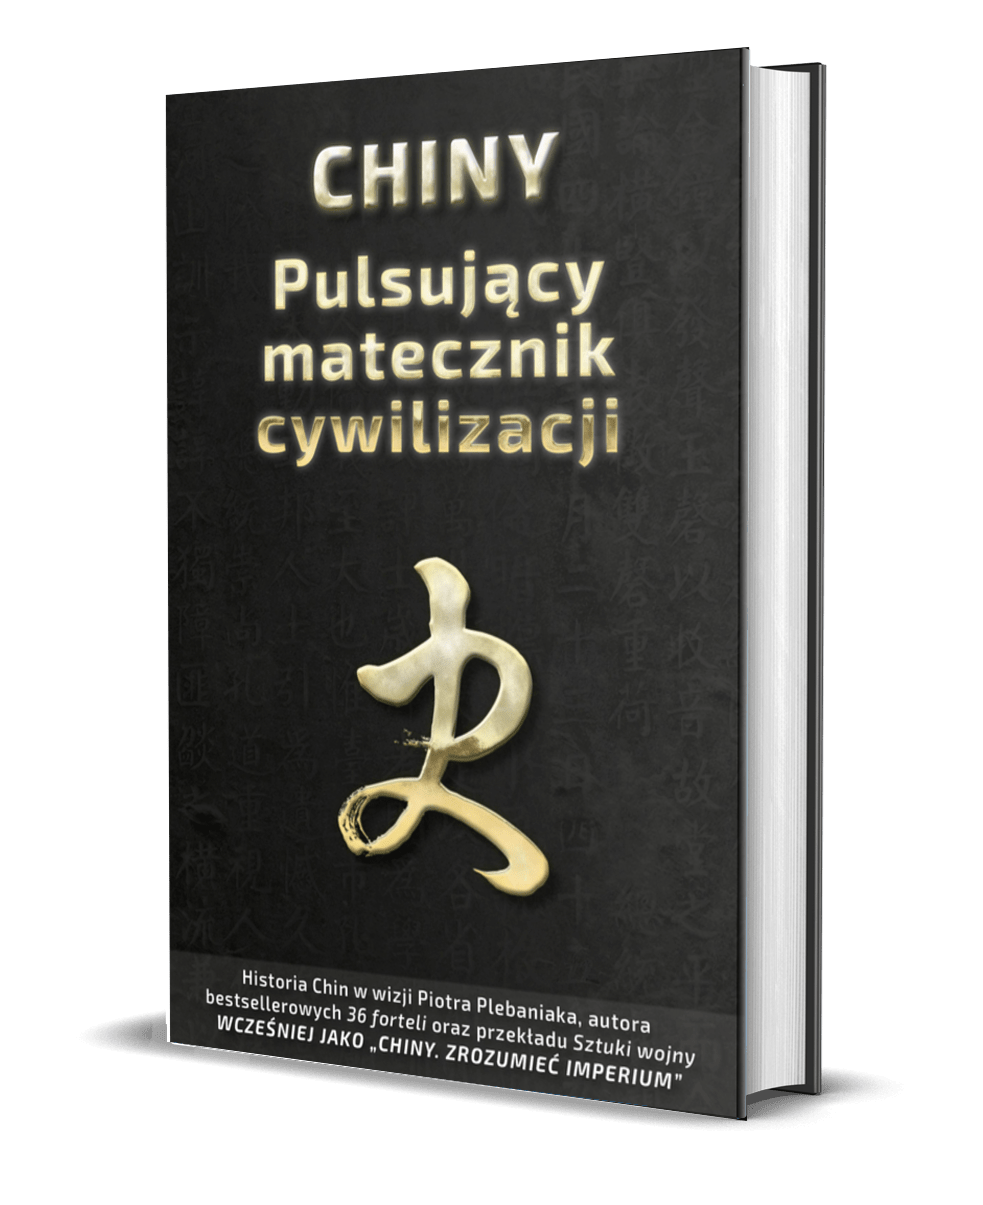 Książka Piotr Plebaniak, Chiny 一 Pulsujący matecznik cywilizacji, gdzie kupić - lista księgarni (poniżej)